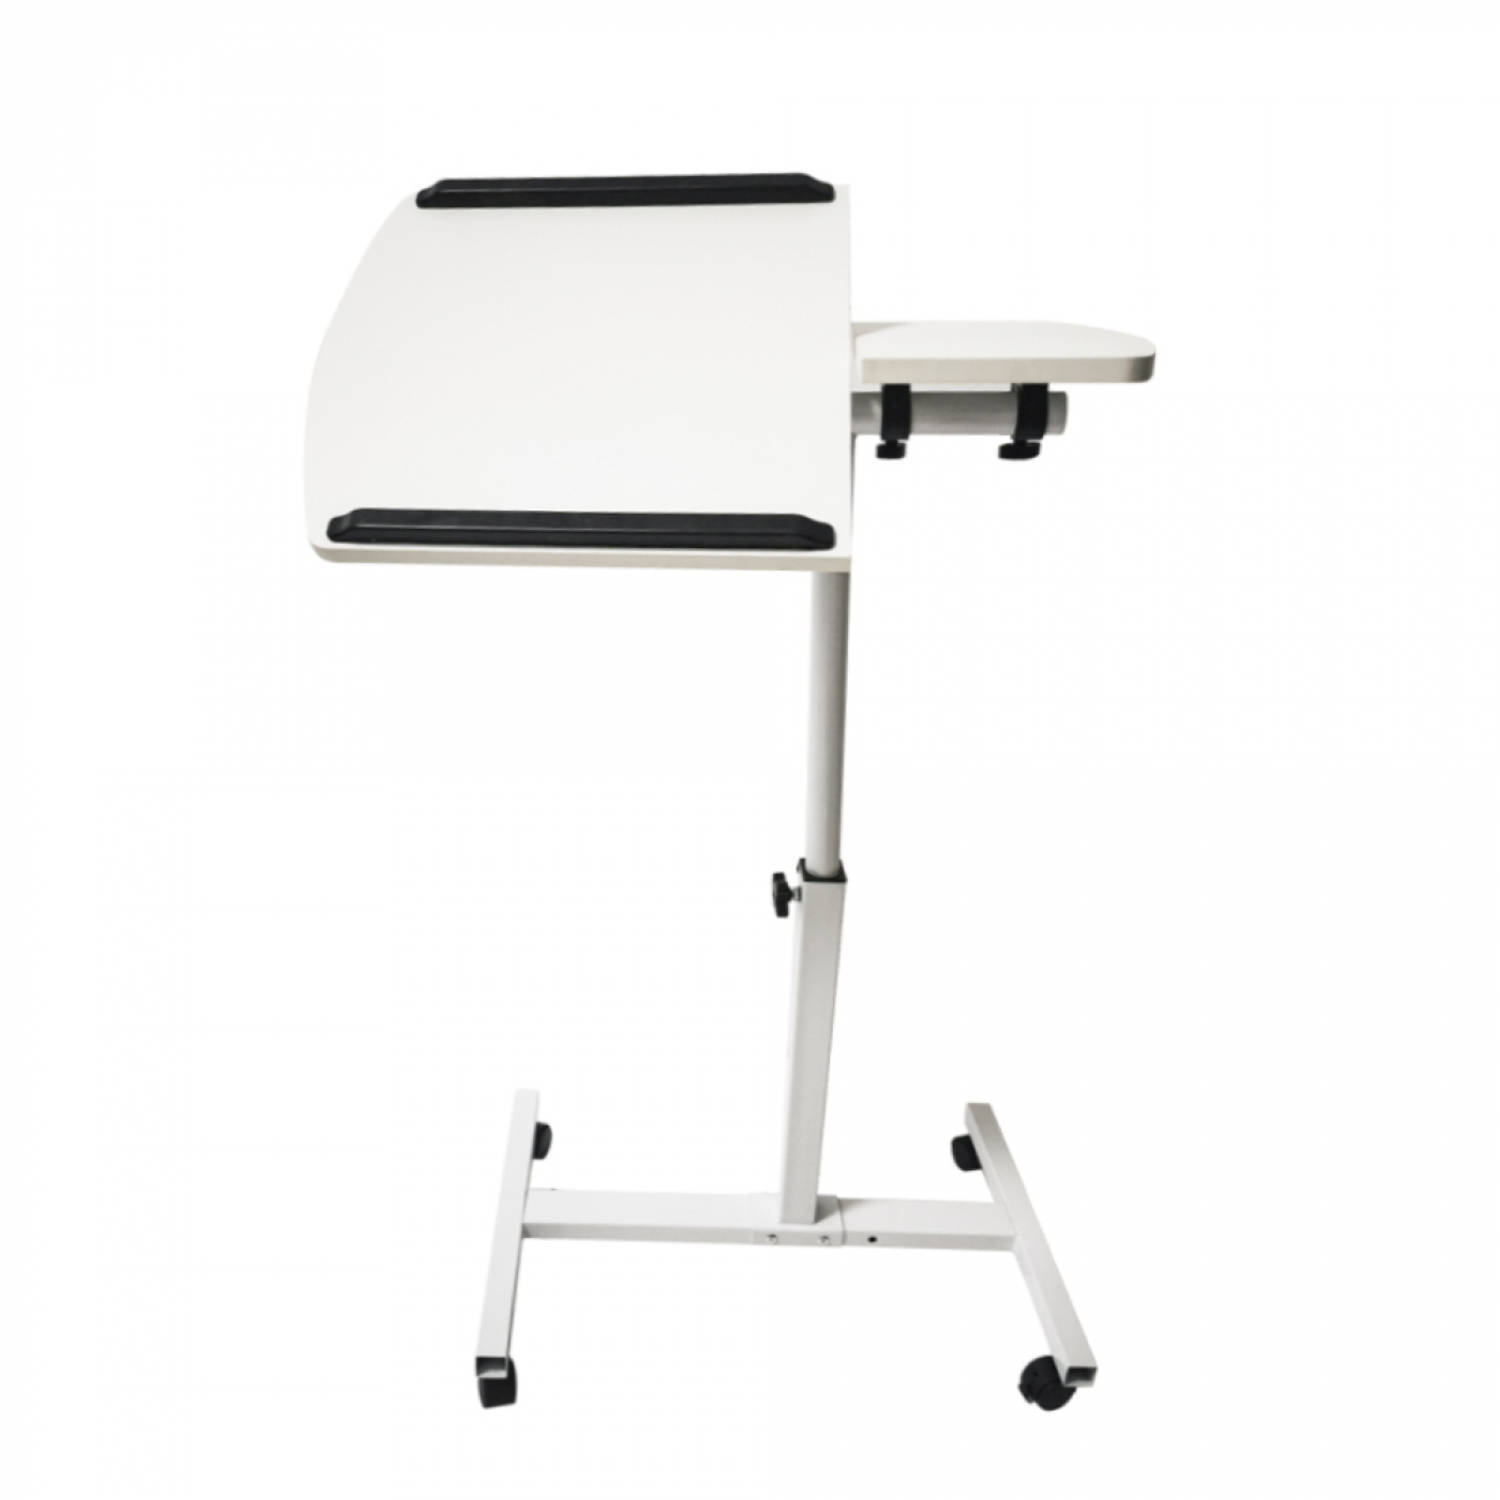 vdd laptoptafel laptopstandaard - bijzettafel bedtafel - verrijdbaar wieltjes - hoogte verstelbaar - wit